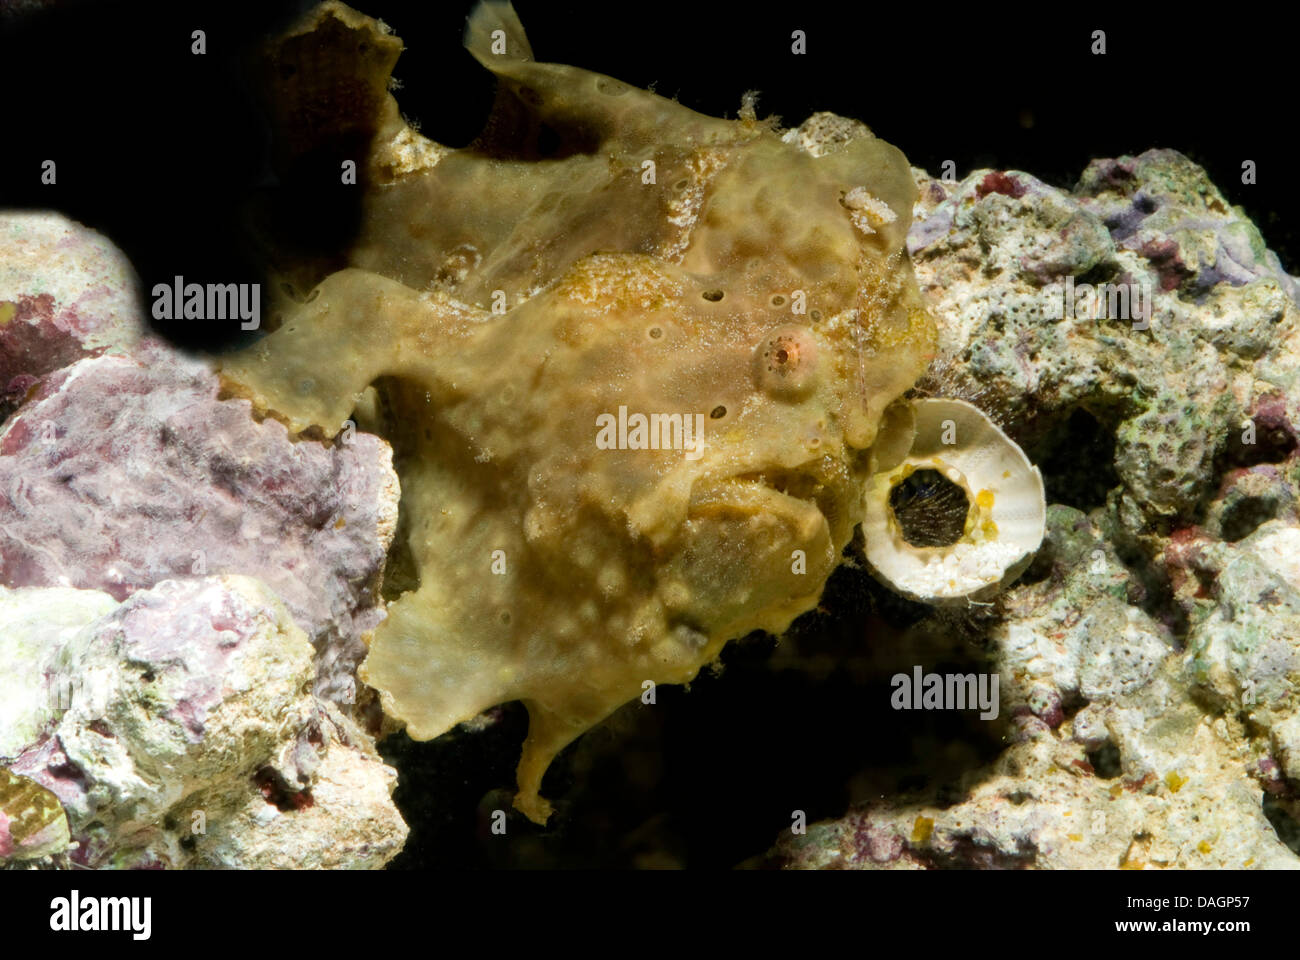 Poisson grenouille verruqueux, Clown poissons grenouille (Antennarius maculatus Antennarius, phymatodes), bien camouflés parmi les coraux Banque D'Images